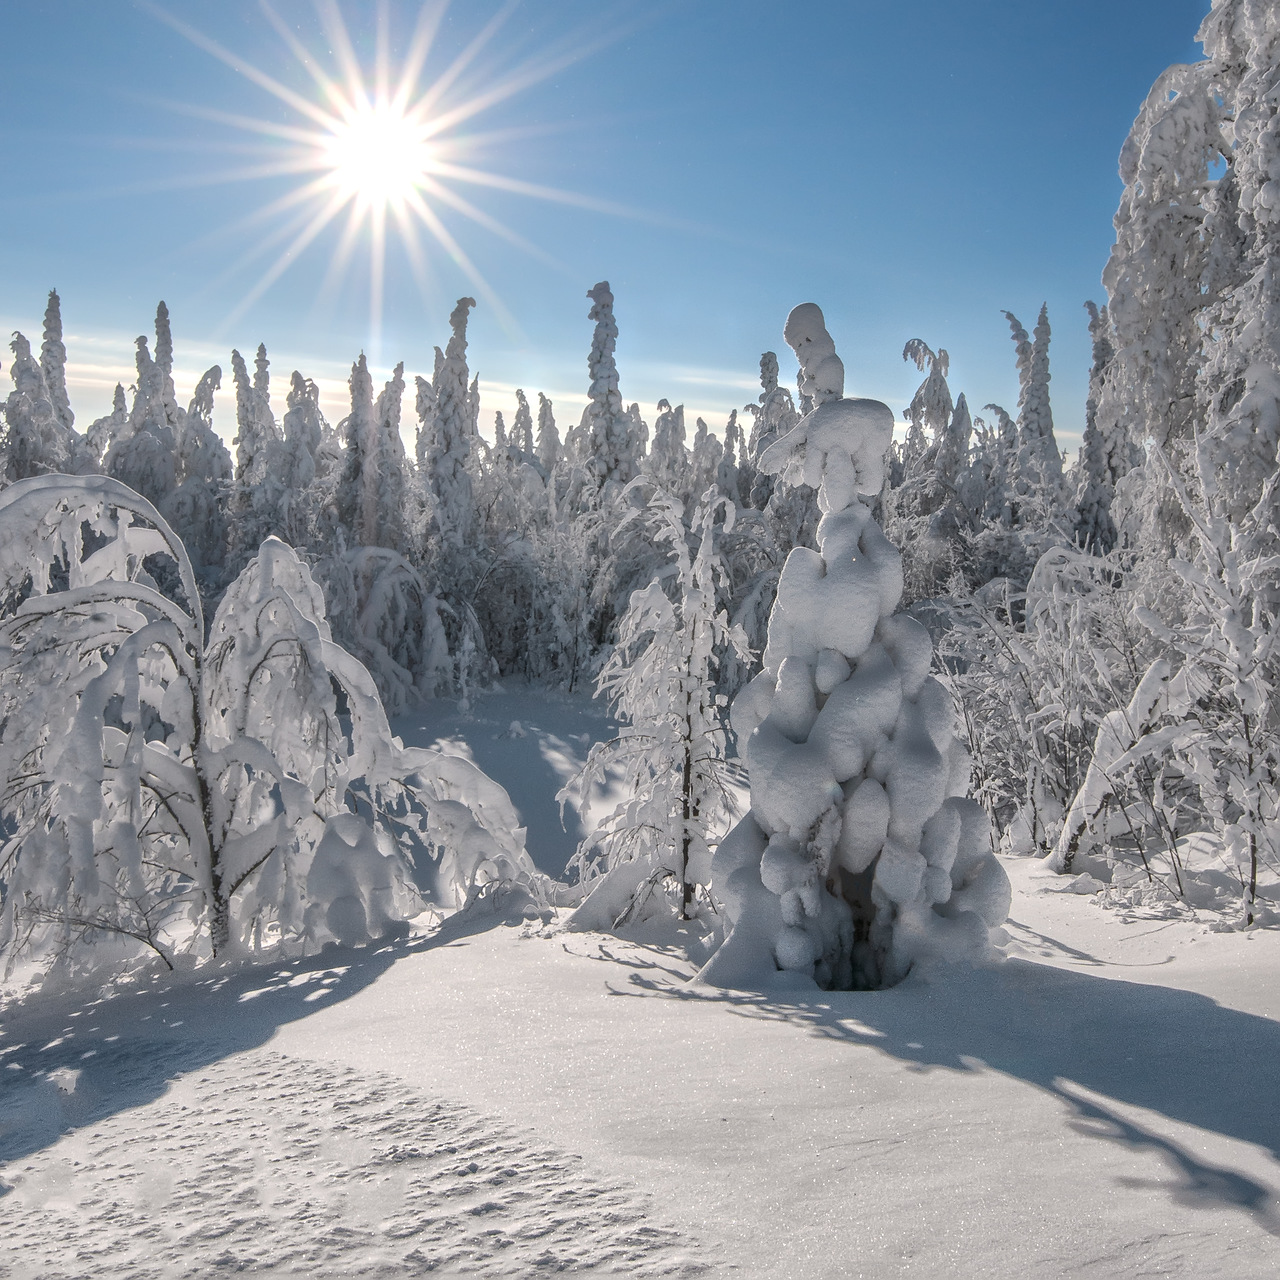 Fotos do inverno: O sol na floresta de inverno